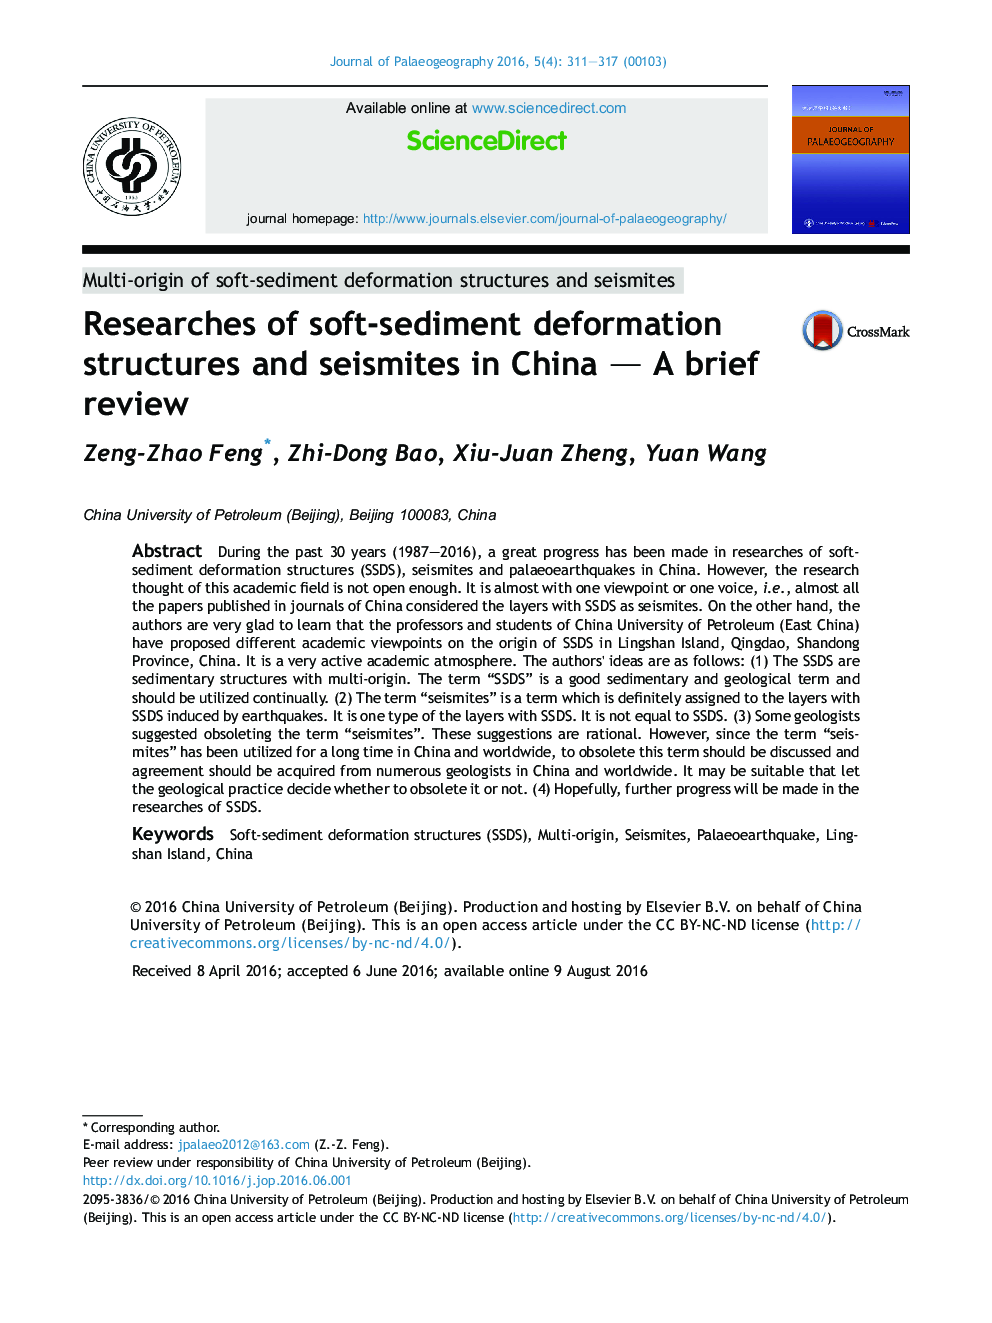 بررسی ساختارهای تغییر شکل رسوبات و رسوم در چین؛ بررسی مختصر